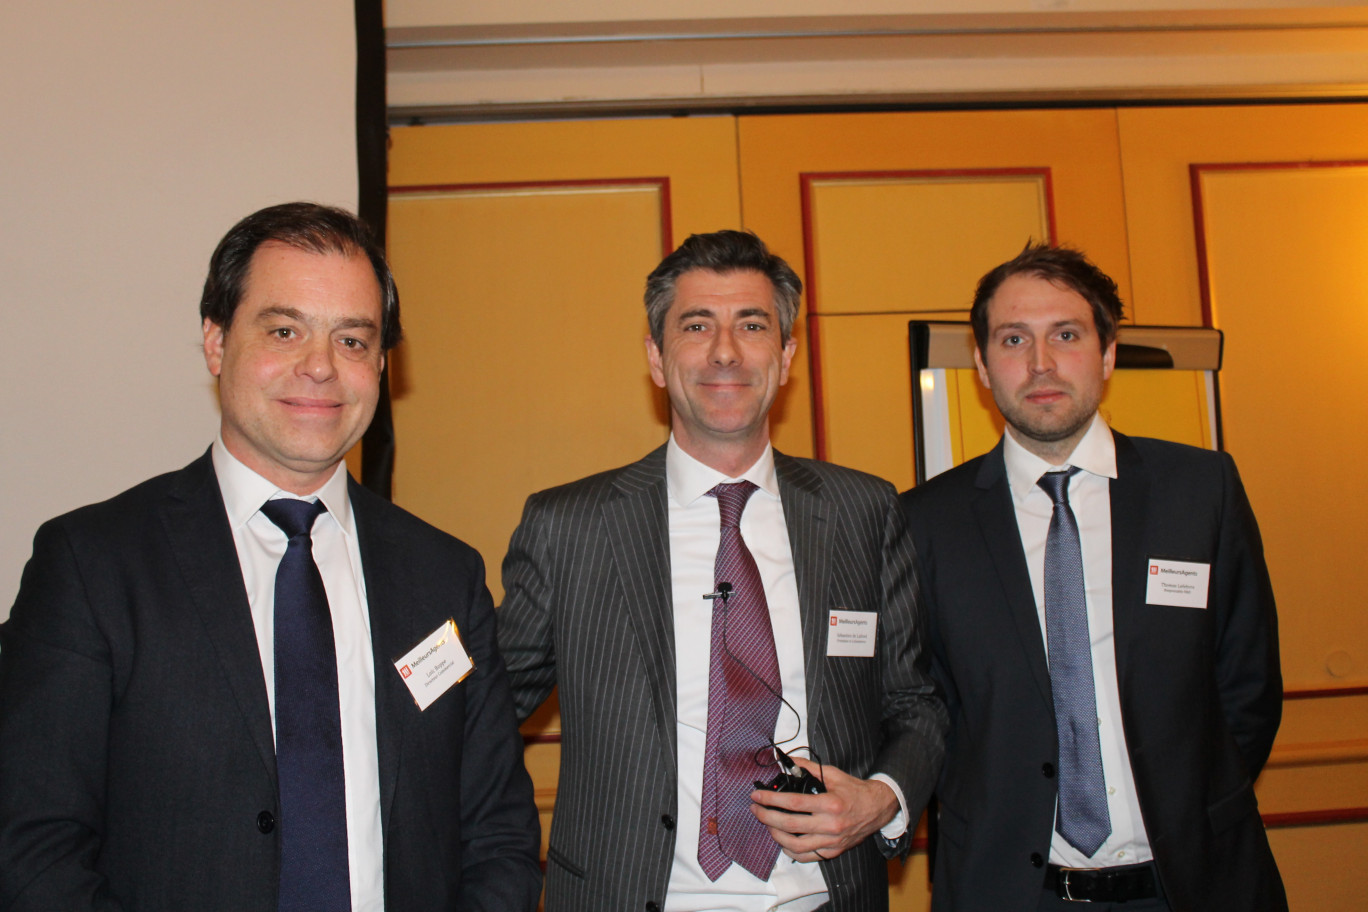 De gauche à droite, Thomas Lefebvre, responsable R &amp; D, Sébastien de Lafond président et co-fondateur, et Loïc Boppe, directeur commercial.